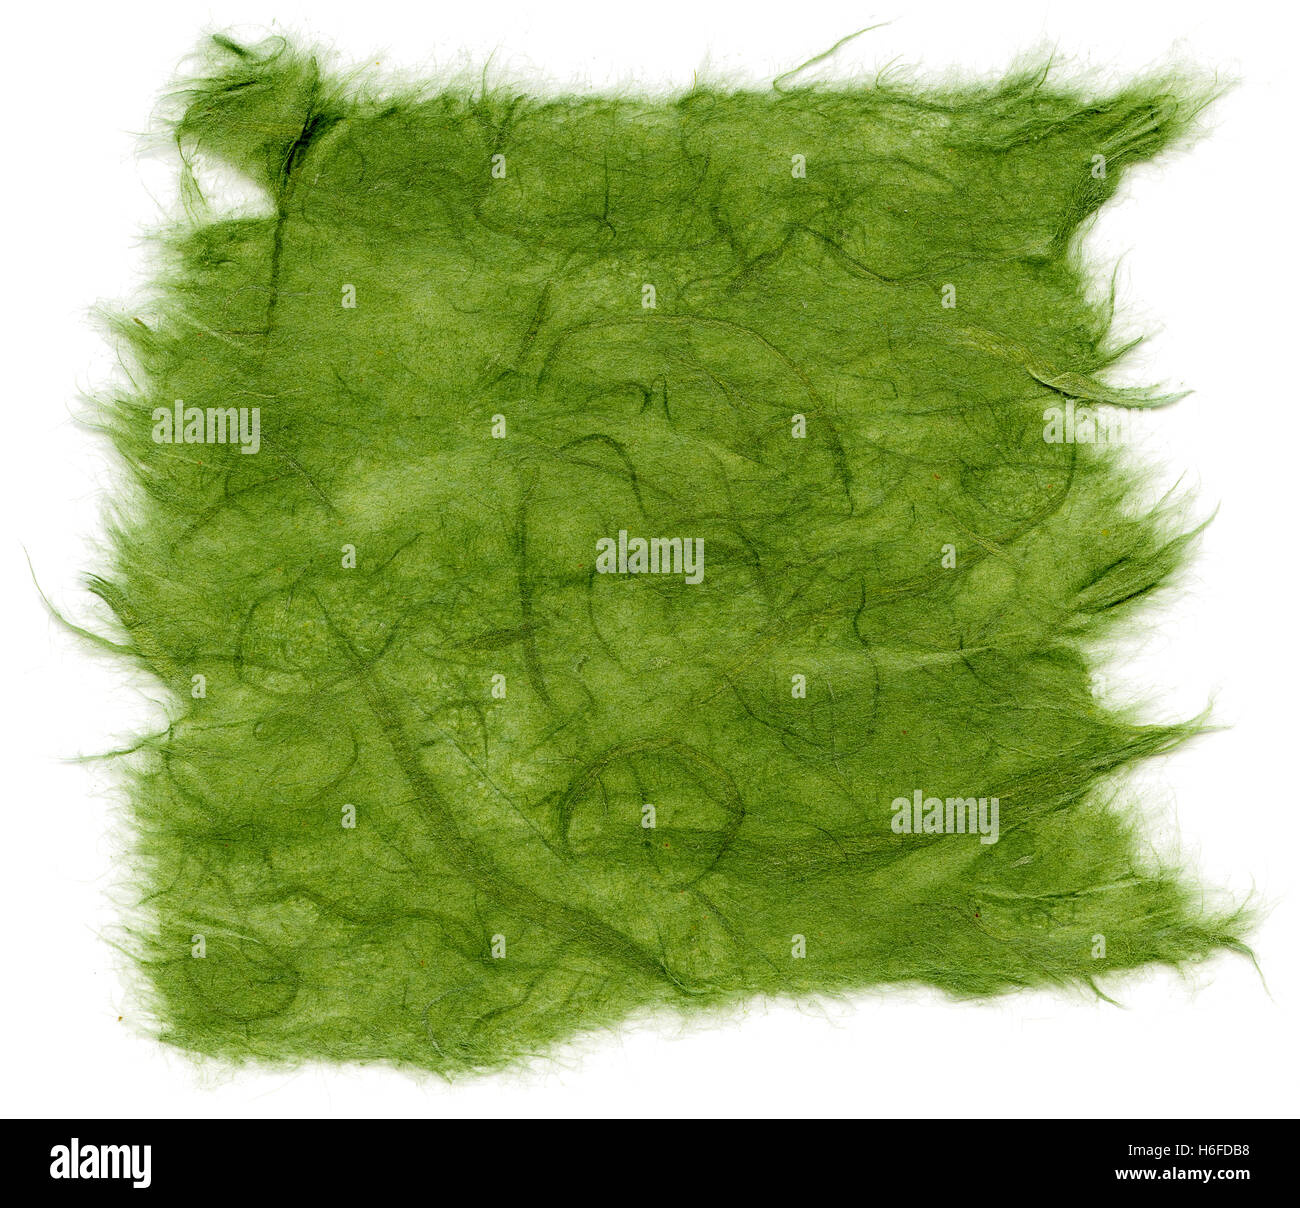 Textur des grünen Reispapier mit zerrissenen Kanten. Isoliert auf weißem Hintergrund. Mit 2400dpi mit einem professionellen Scanner gescannt. Stockfoto